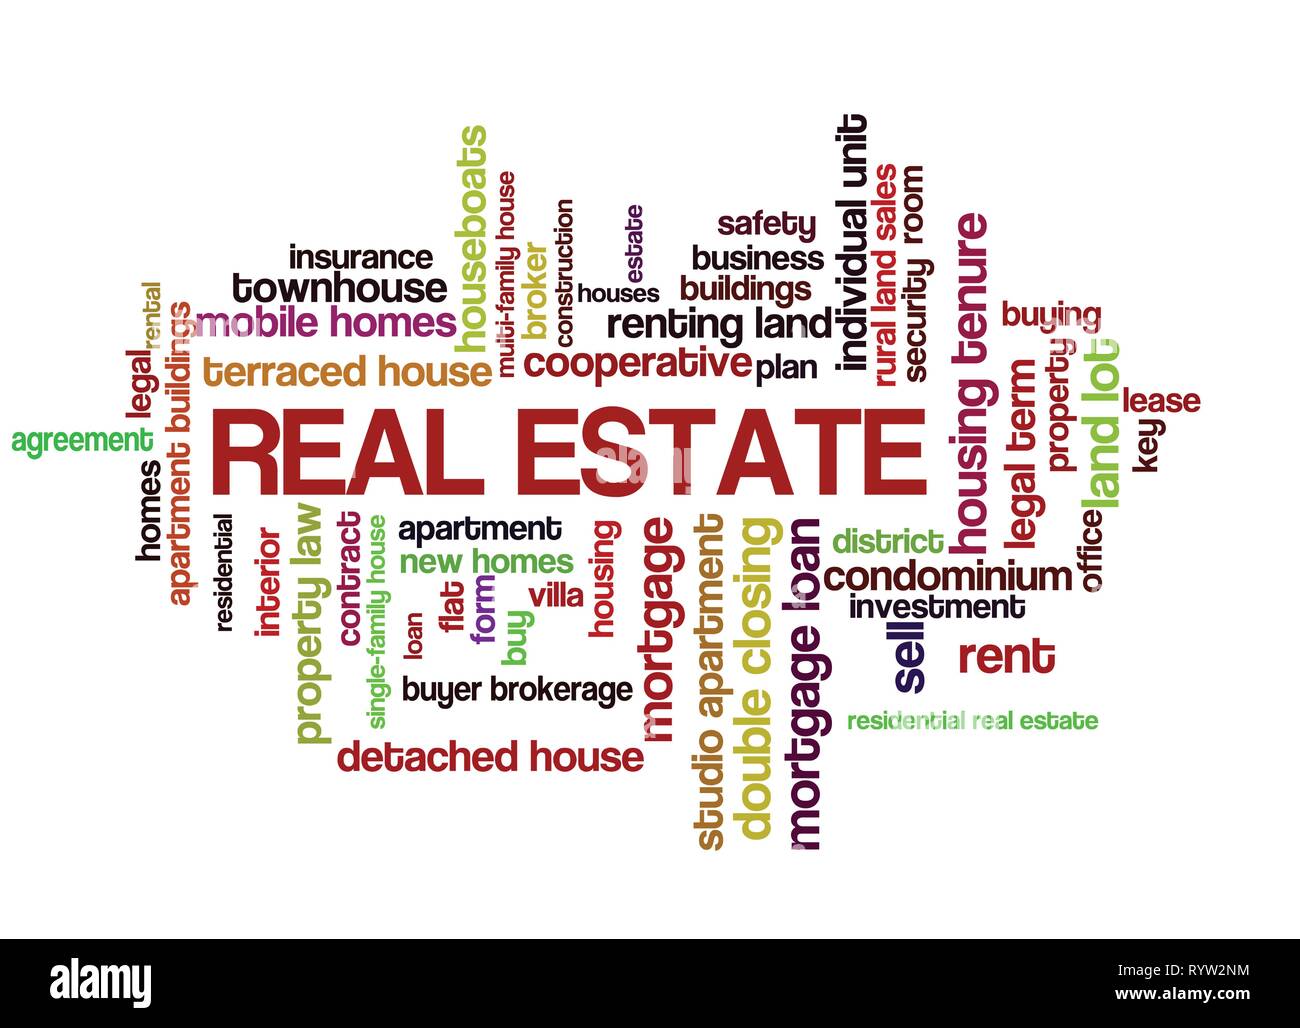 Immobilien Wort Tag Cloud, zeigt Wörter zu kaufen, zu verkaufen oder zu vermieten Häuser und ähnliches Konzept, Vector 10 ESP Stock Vektor